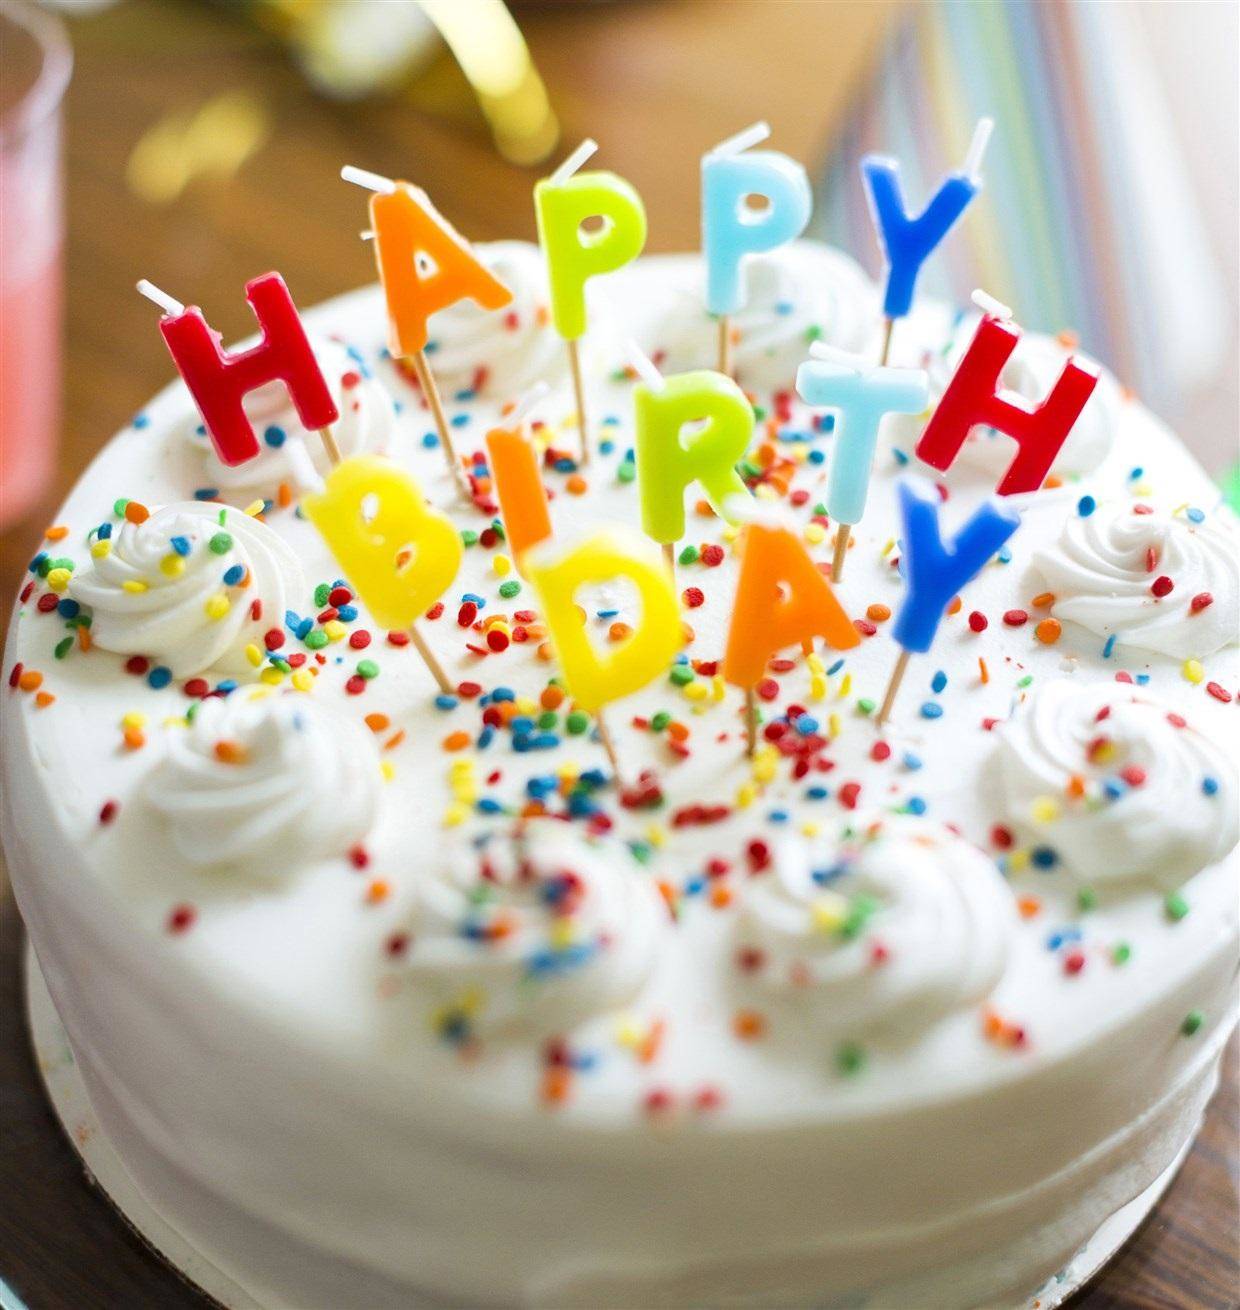 birthday special: 26 जनवरी को जन्म लेने वाले व्यक्तियों के लिए कैसा रहेगा साल